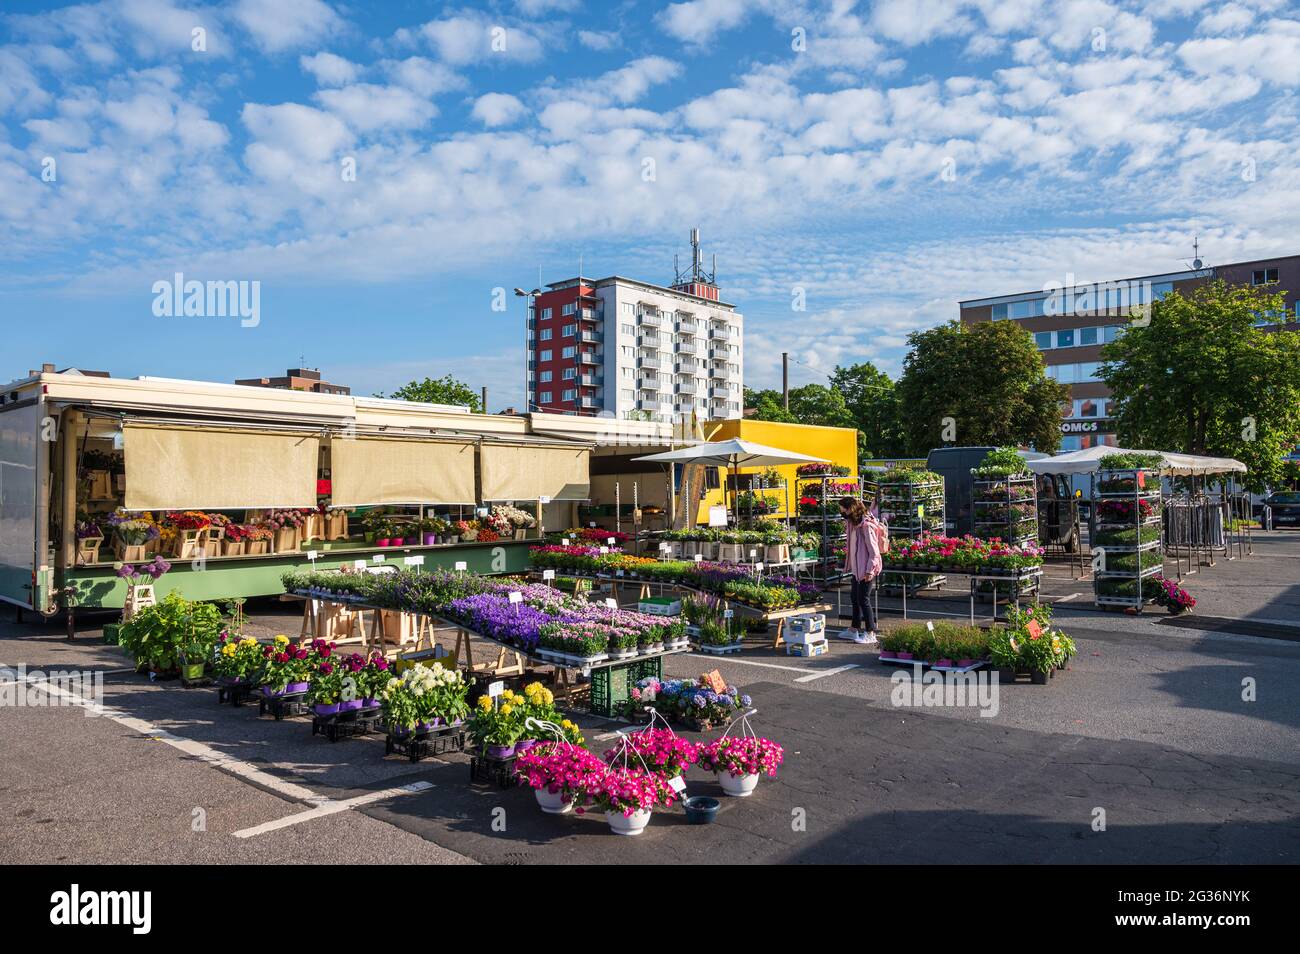 Wochenmarkt auf dem Exerzierplatz in Kiel in aller Frühe, es herrscht noch völlige Ruhe vor dem Ansturm Stock Photo